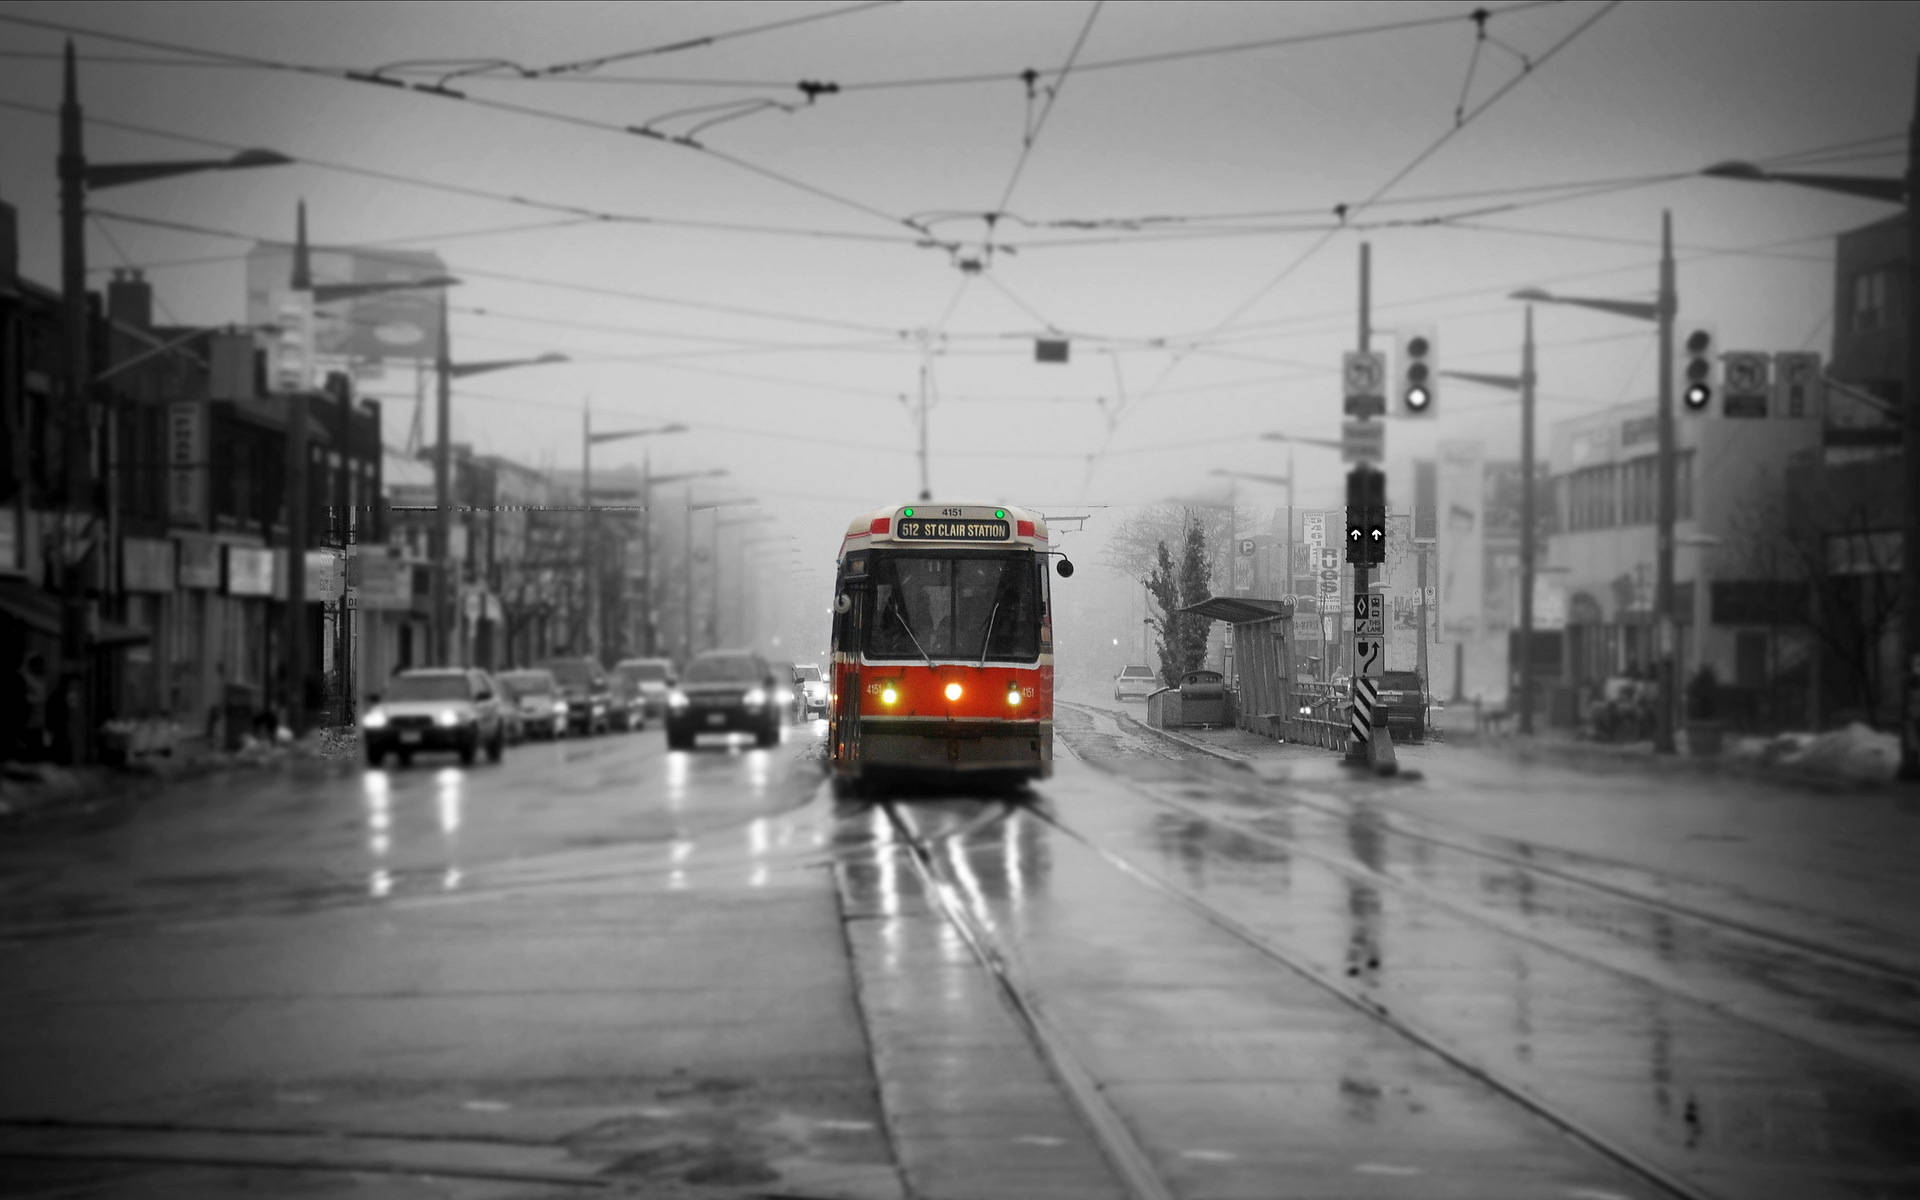 Torontobus In Einer Grau Gehaltenen Szenerie Wallpaper